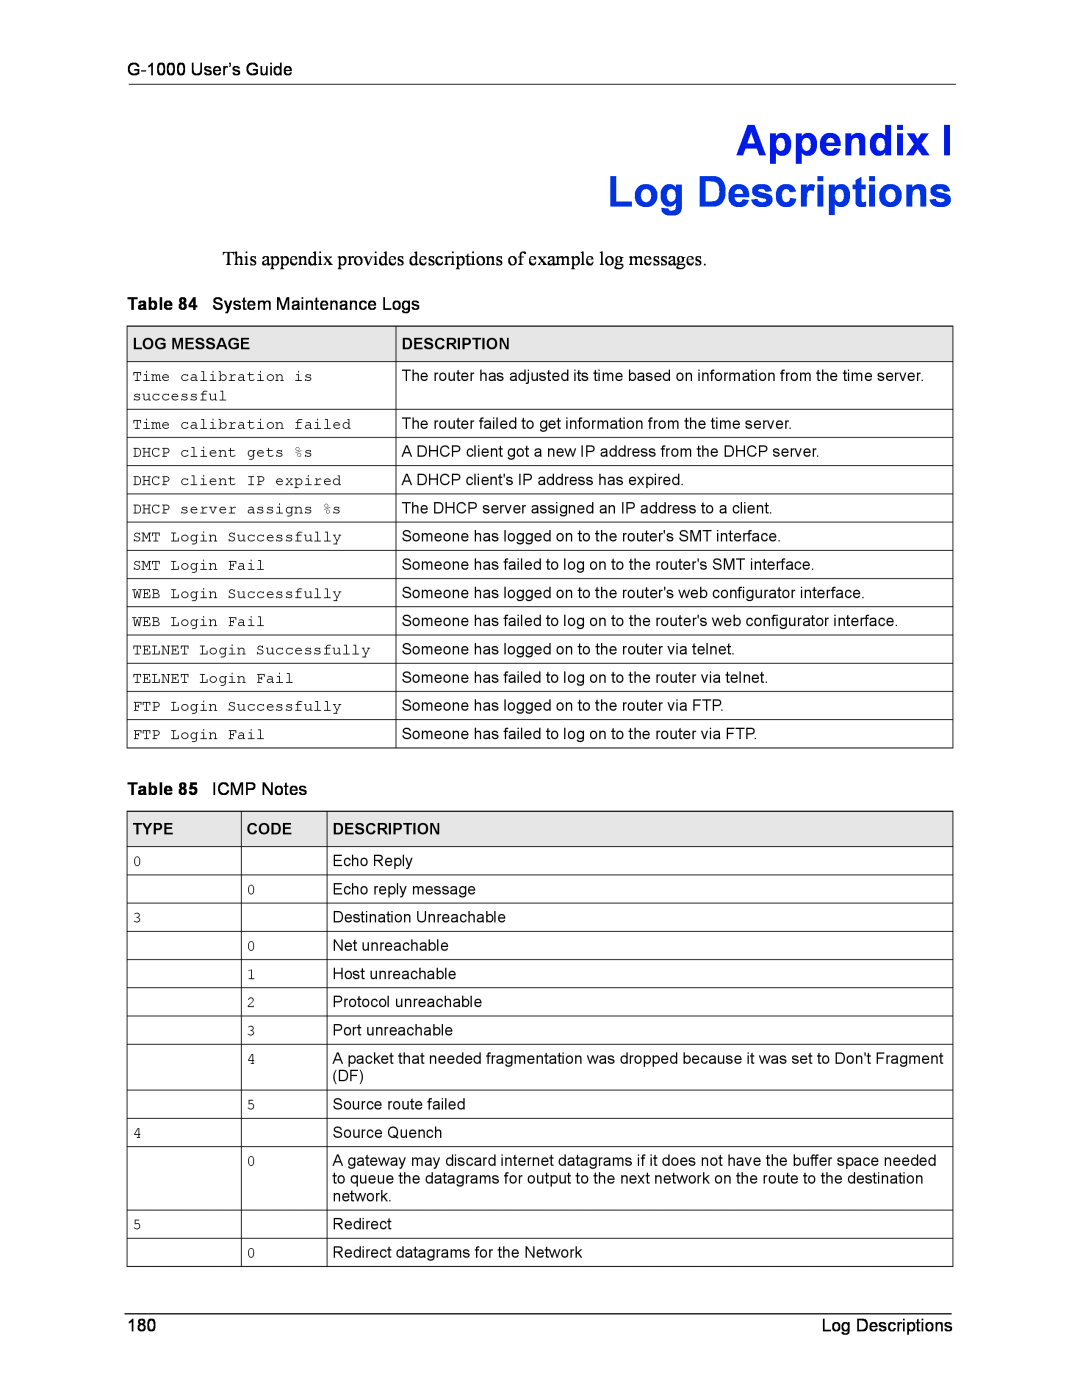 ZyXEL Communications Appendix, Log Descriptions, G-1000 User’s Guide, System Maintenance Logs, ICMP Notes, Log Message 